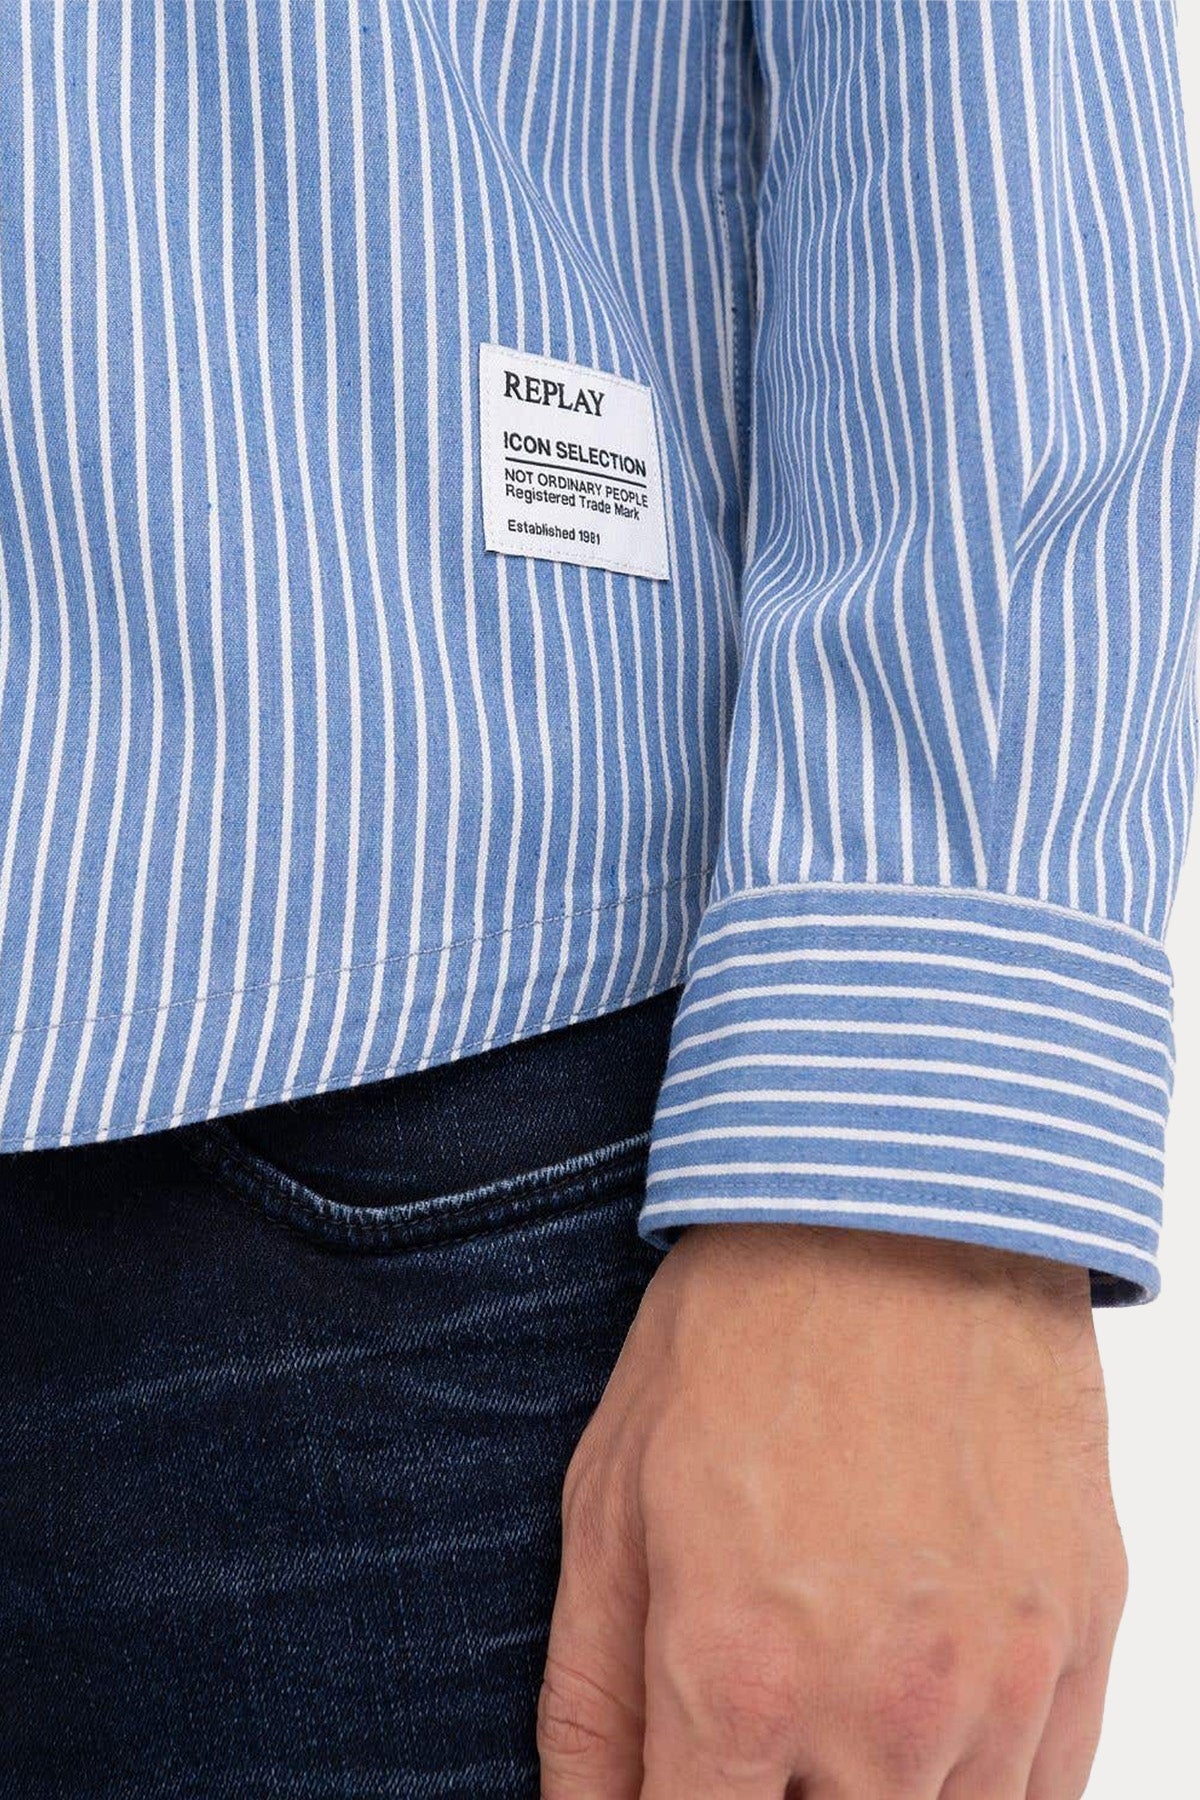 Replay Klasik Yaka Cep Detaylı Çizgili Gömlek Ceket